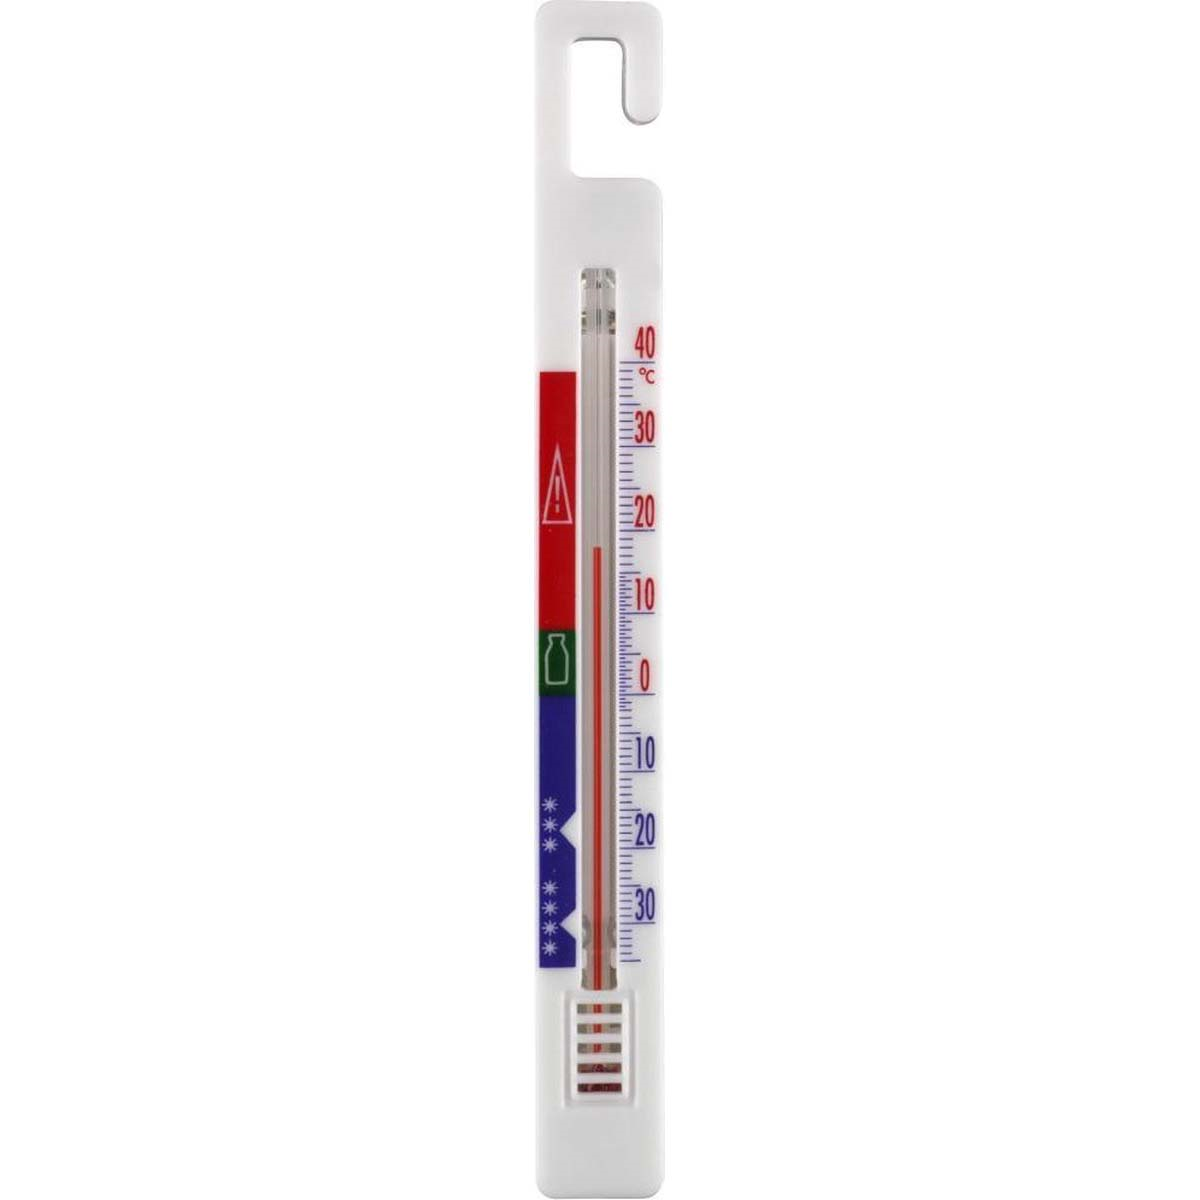 Wpro TER214 Kühlschrank-Gefrierschrank-Thermometer 